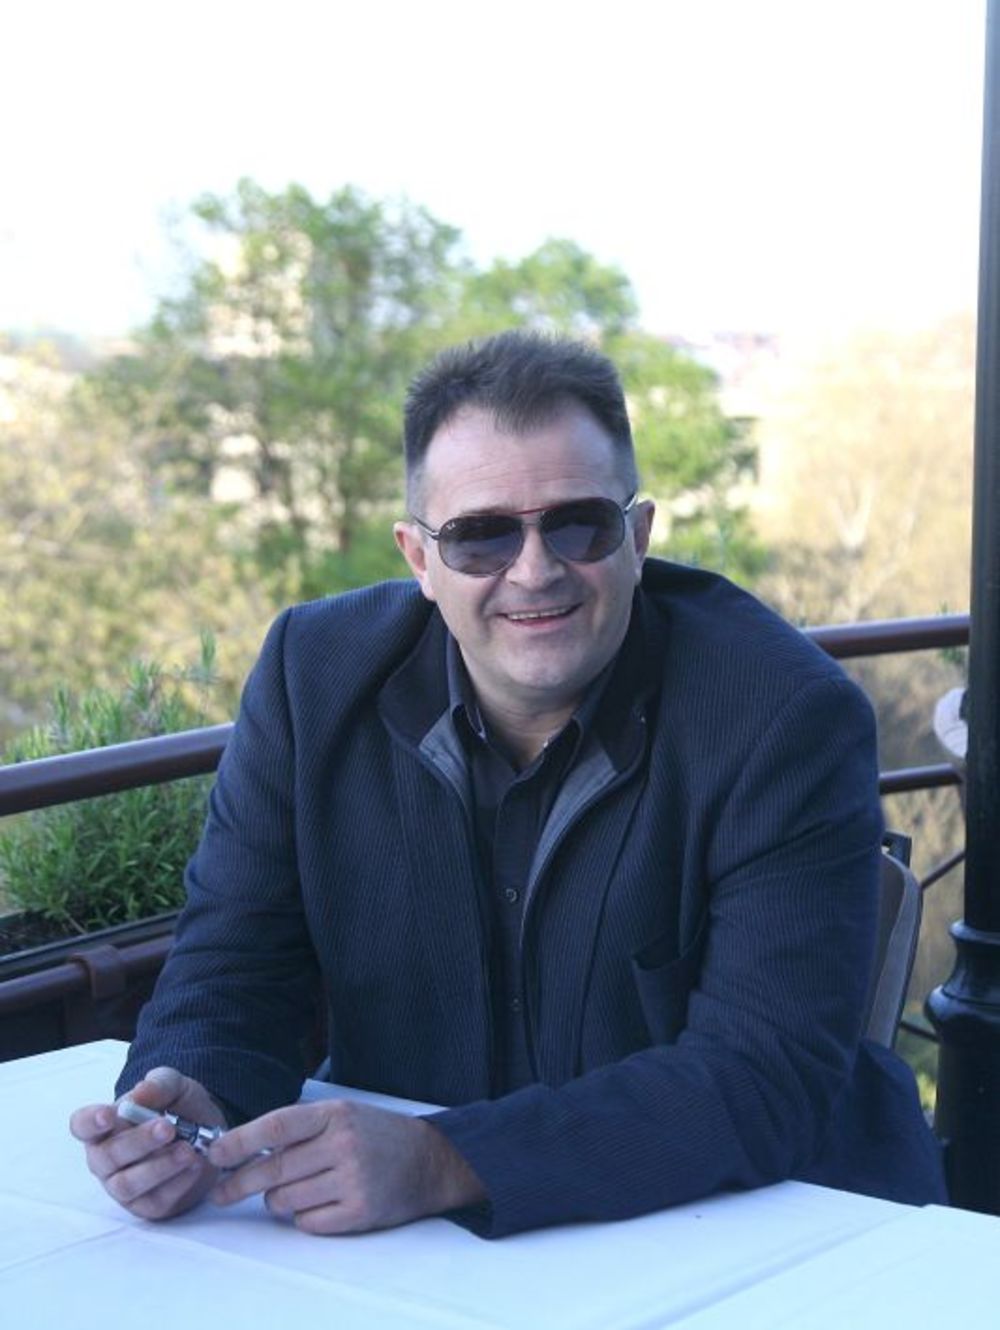 Multimedijalni umetnik Miroslav - Miki Perić u restoranu Kalemegdanska terasa promovisao je novi album i spot za naslovnu numeru Dobar dan. Tokom oficijelnog dela promocije on je objasnio s koliko je ljubavi i pažnje pristupio radu na novom albumu, a potom je